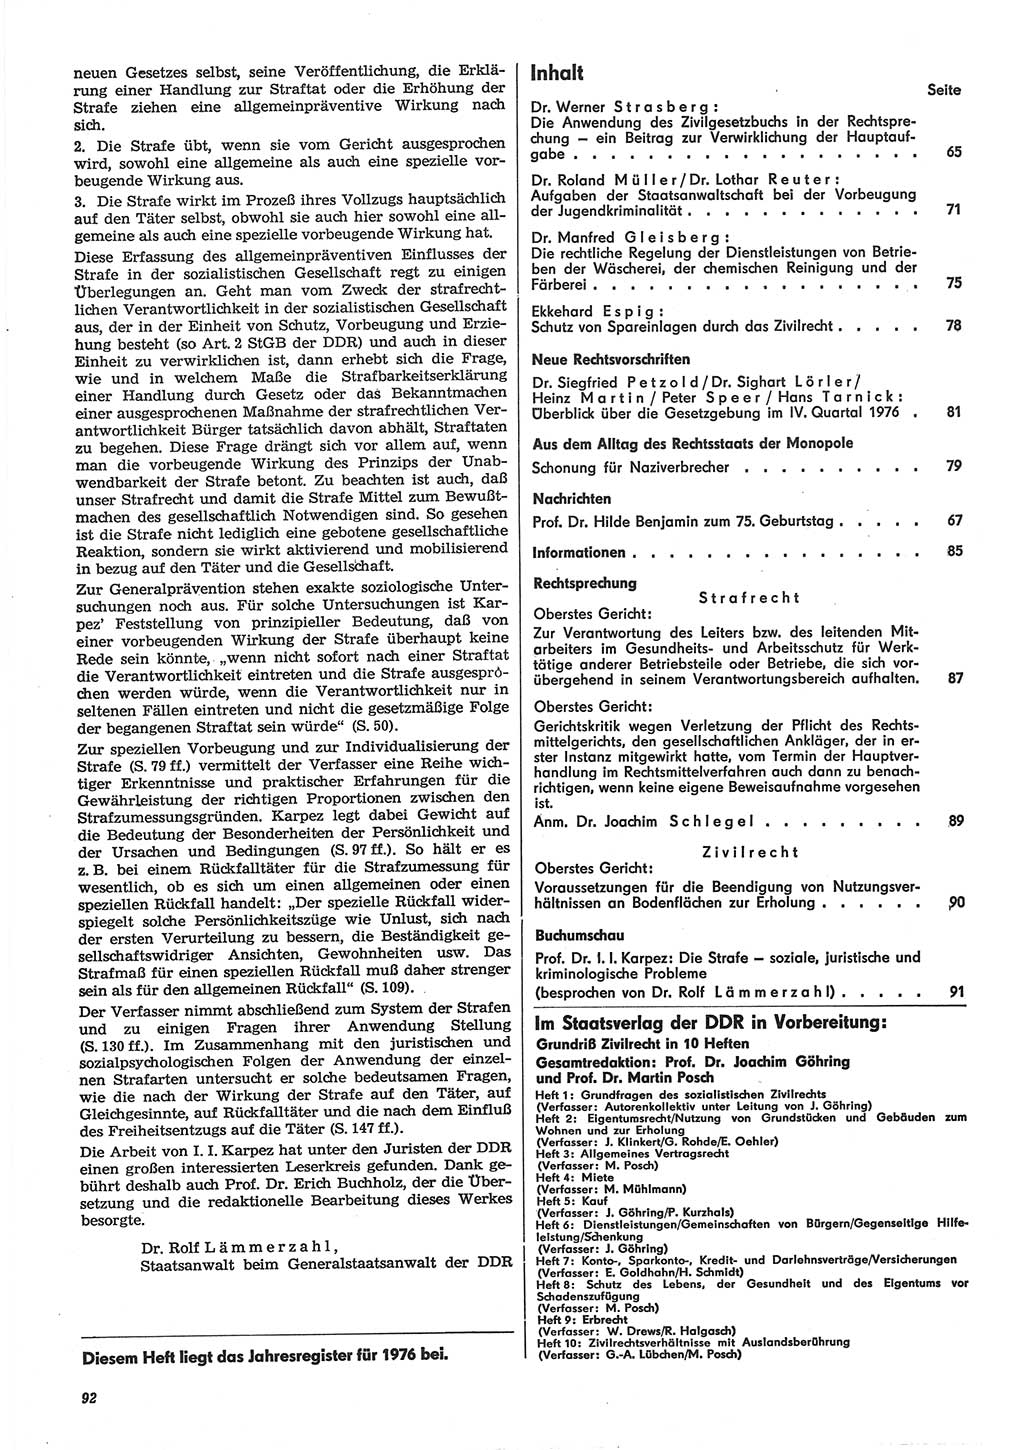 Neue Justiz (NJ), Zeitschrift für Recht und Rechtswissenschaft-Zeitschrift, sozialistisches Recht und Gesetzlichkeit, 31. Jahrgang 1977, Seite 92 (NJ DDR 1977, S. 92)